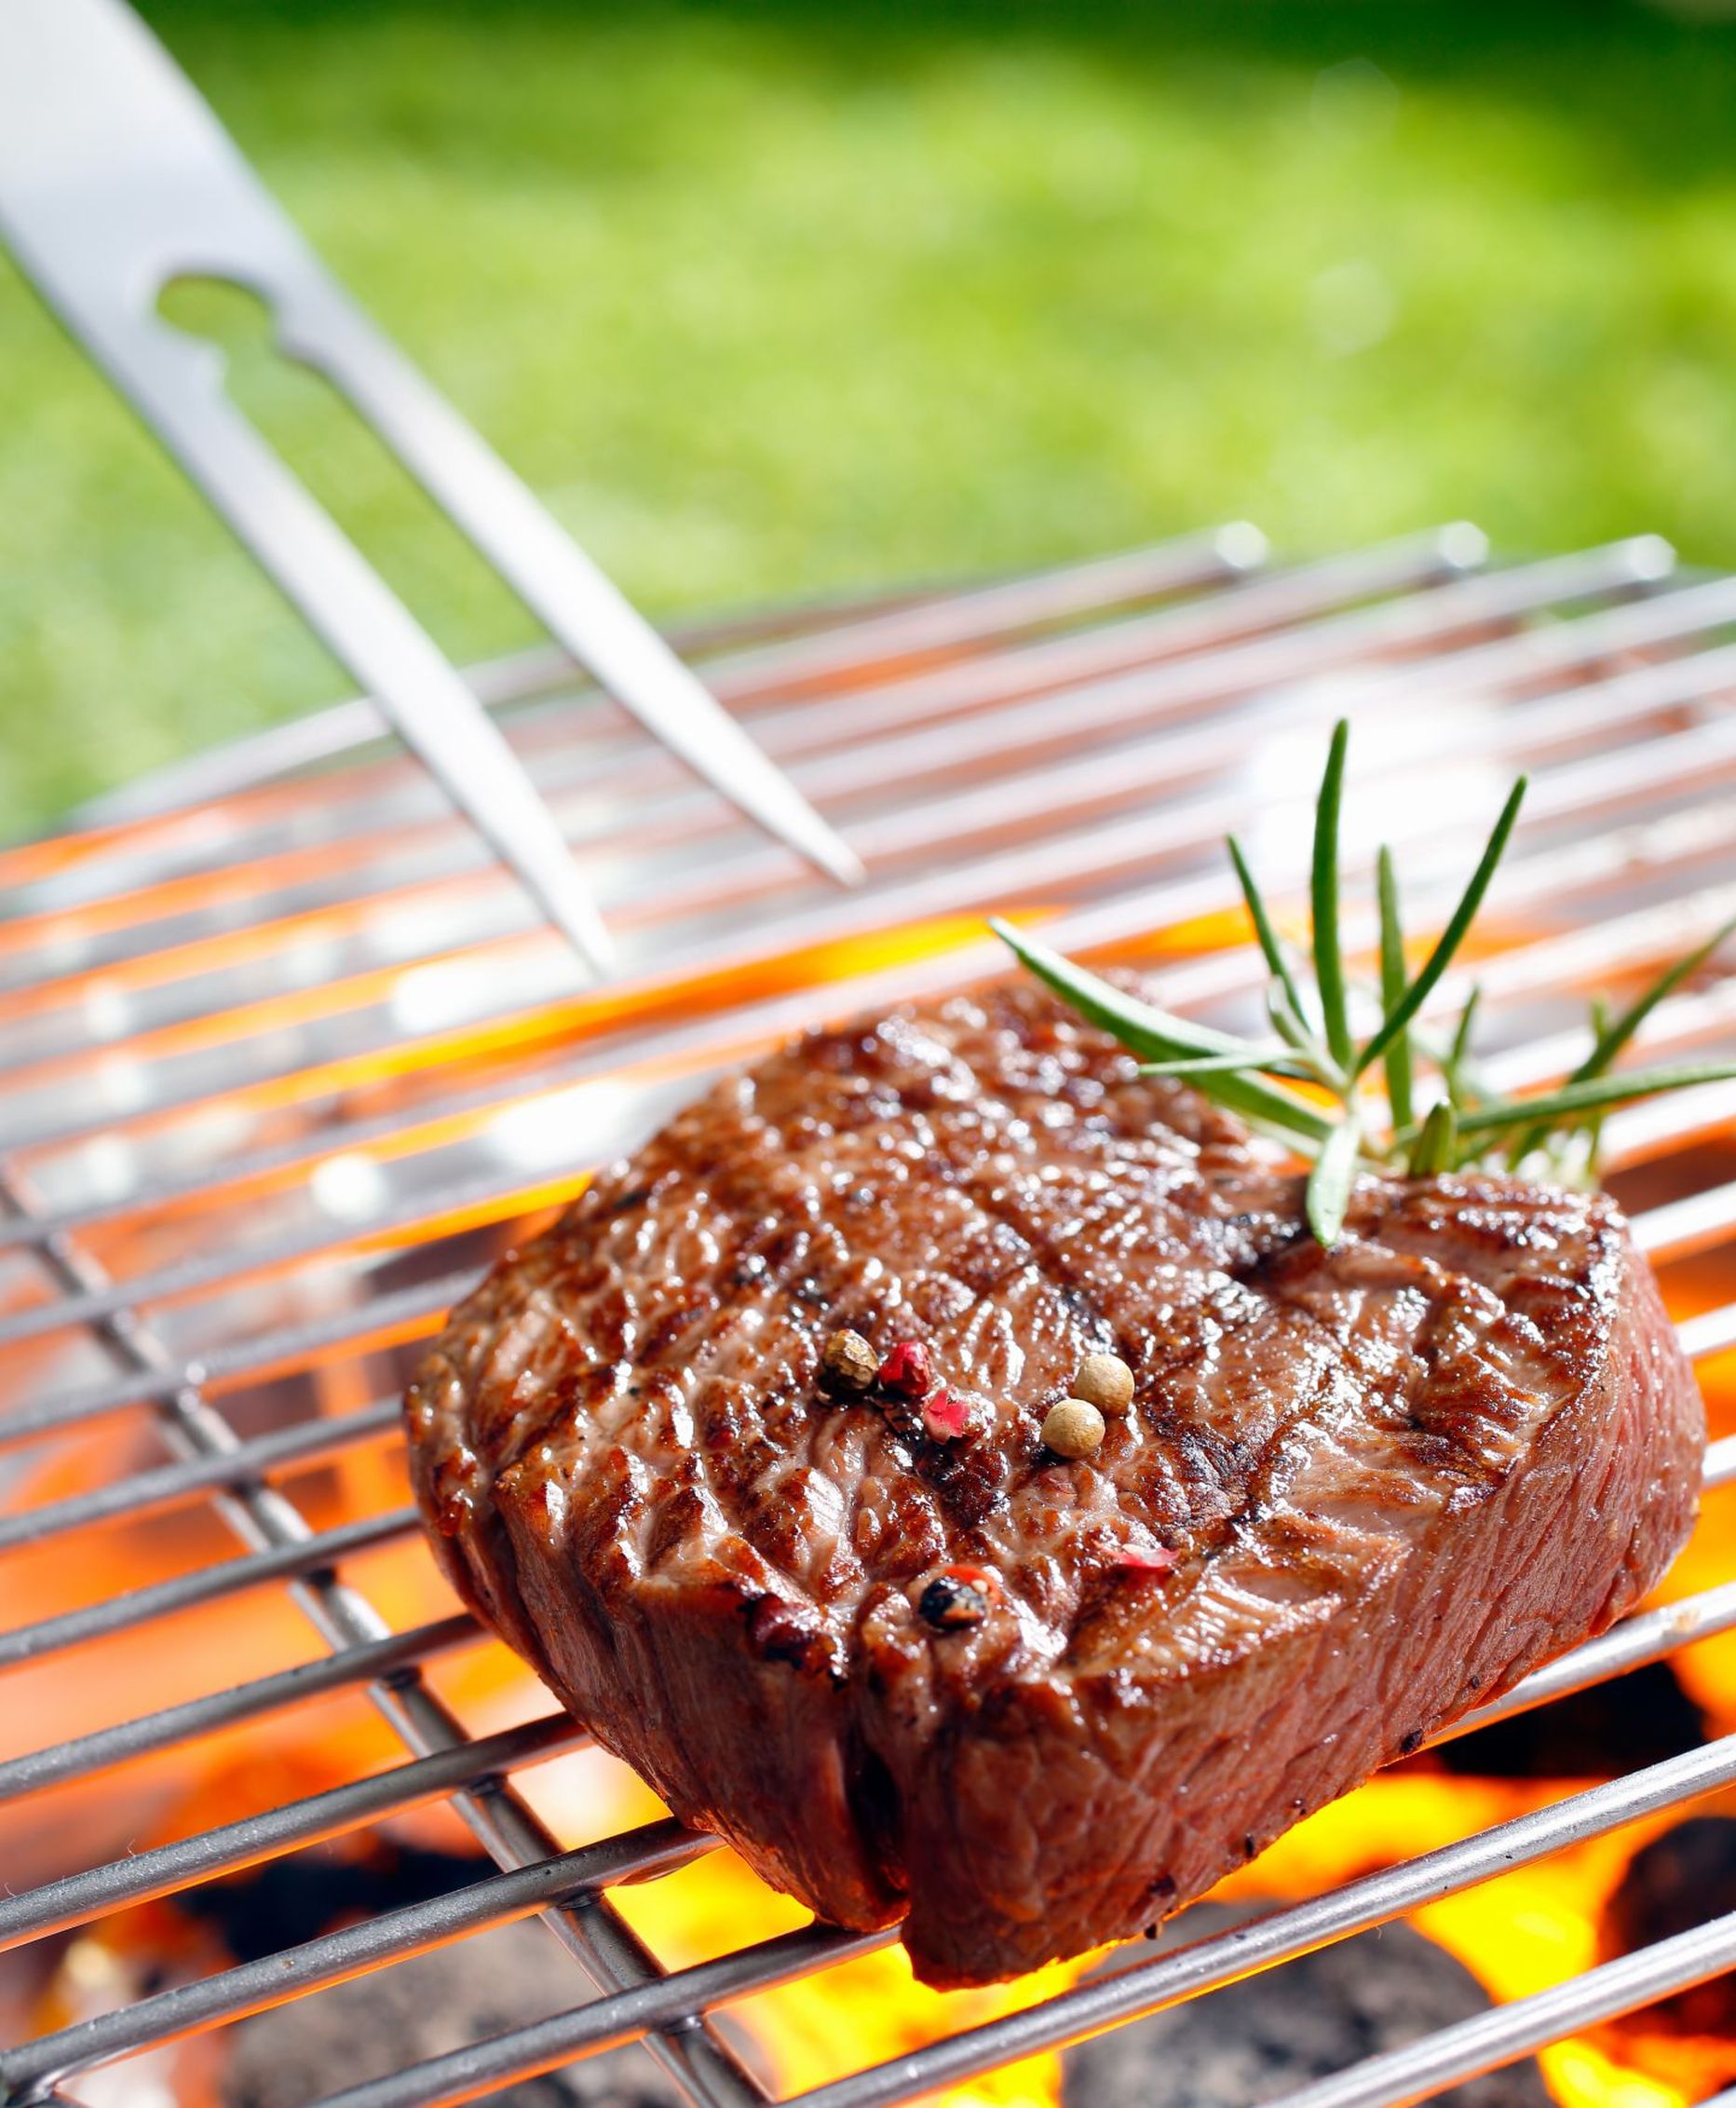 Onkoloogi sõnul tõstab jämesoolevähiriski näiteks liigne punase liha tarbimine.